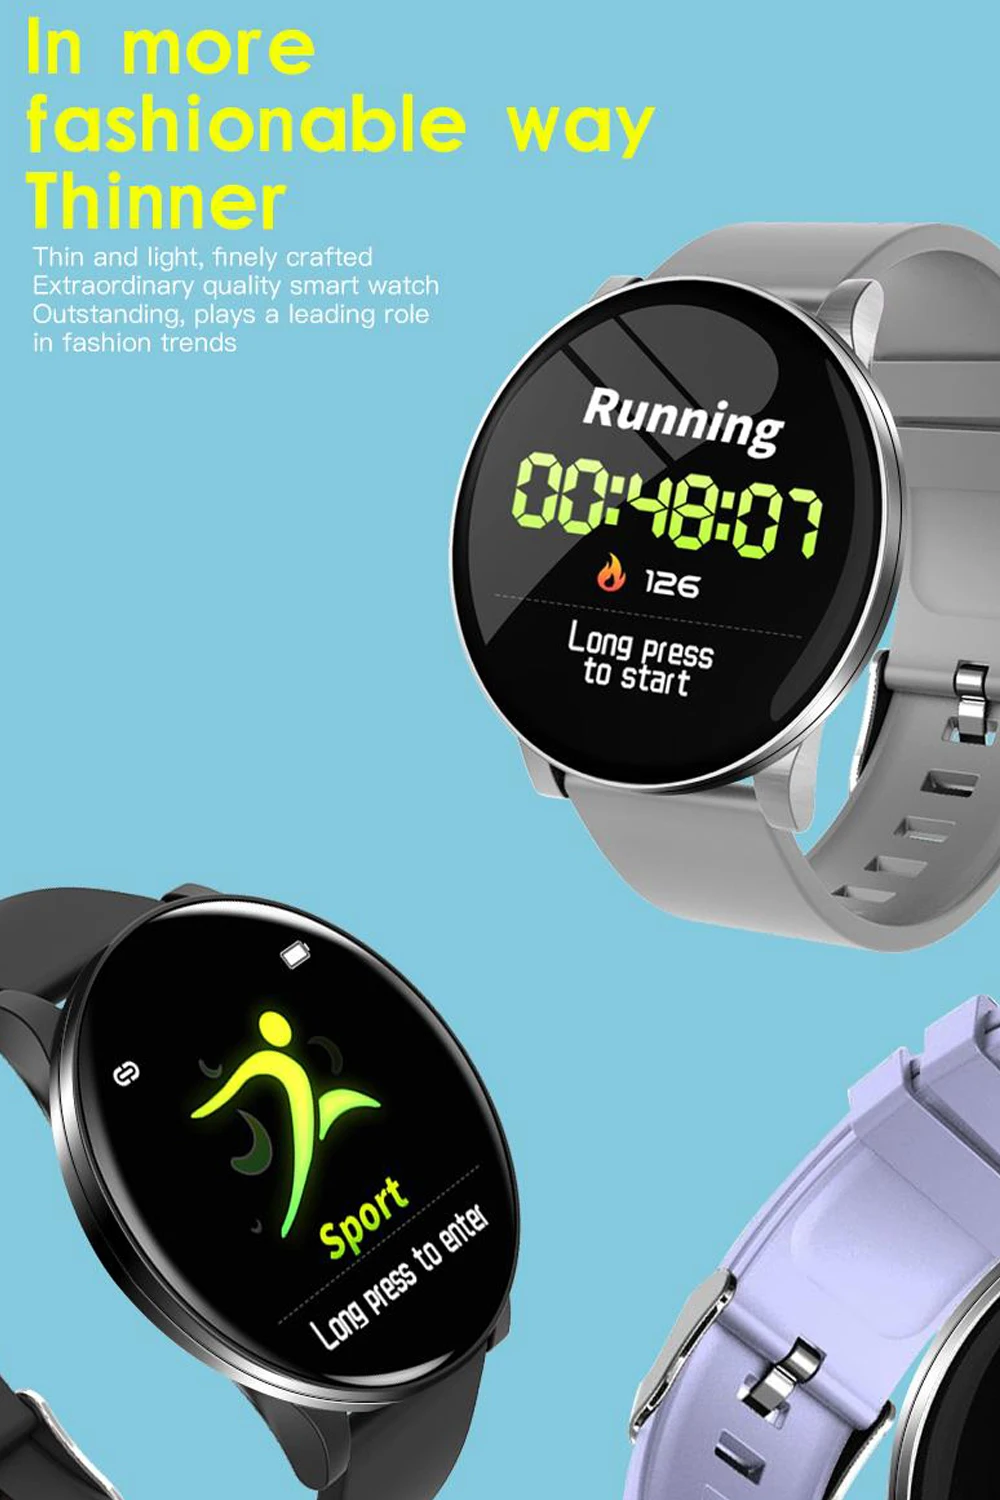 

W8 Bluetooth Smart Watch IP67 Waterproof Sports Fitness Tracker Heart Rate Monitor Blood Pressure Men Women Smartwatch pk V11